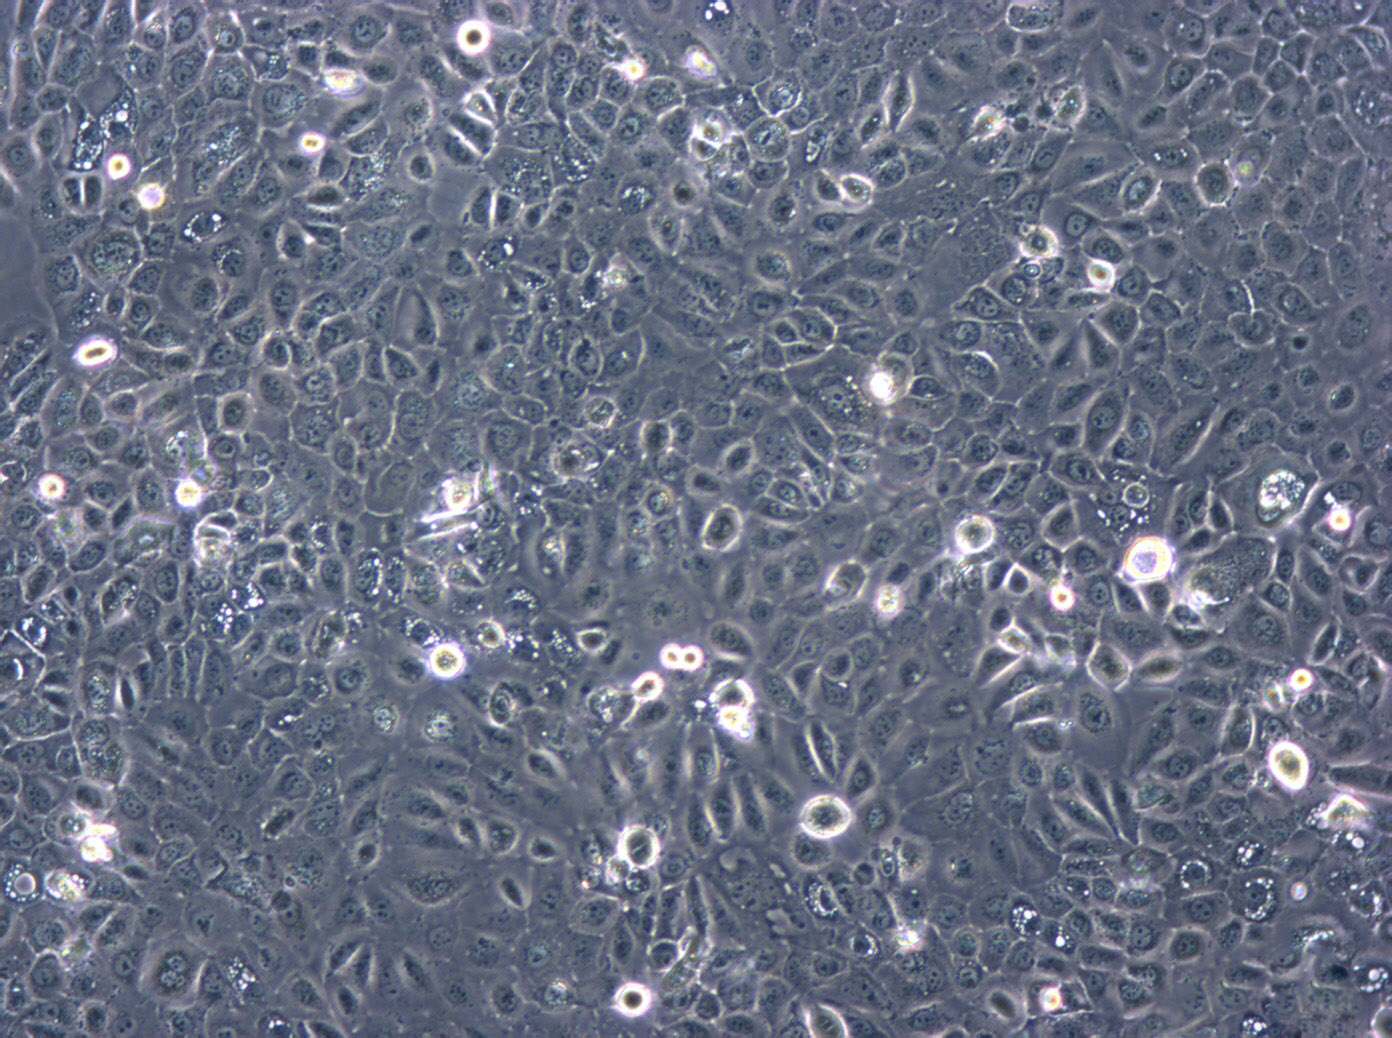 NCI-H2291 epithelioid cells人肺癌细胞系,NCI-H2291 epithelioid cells